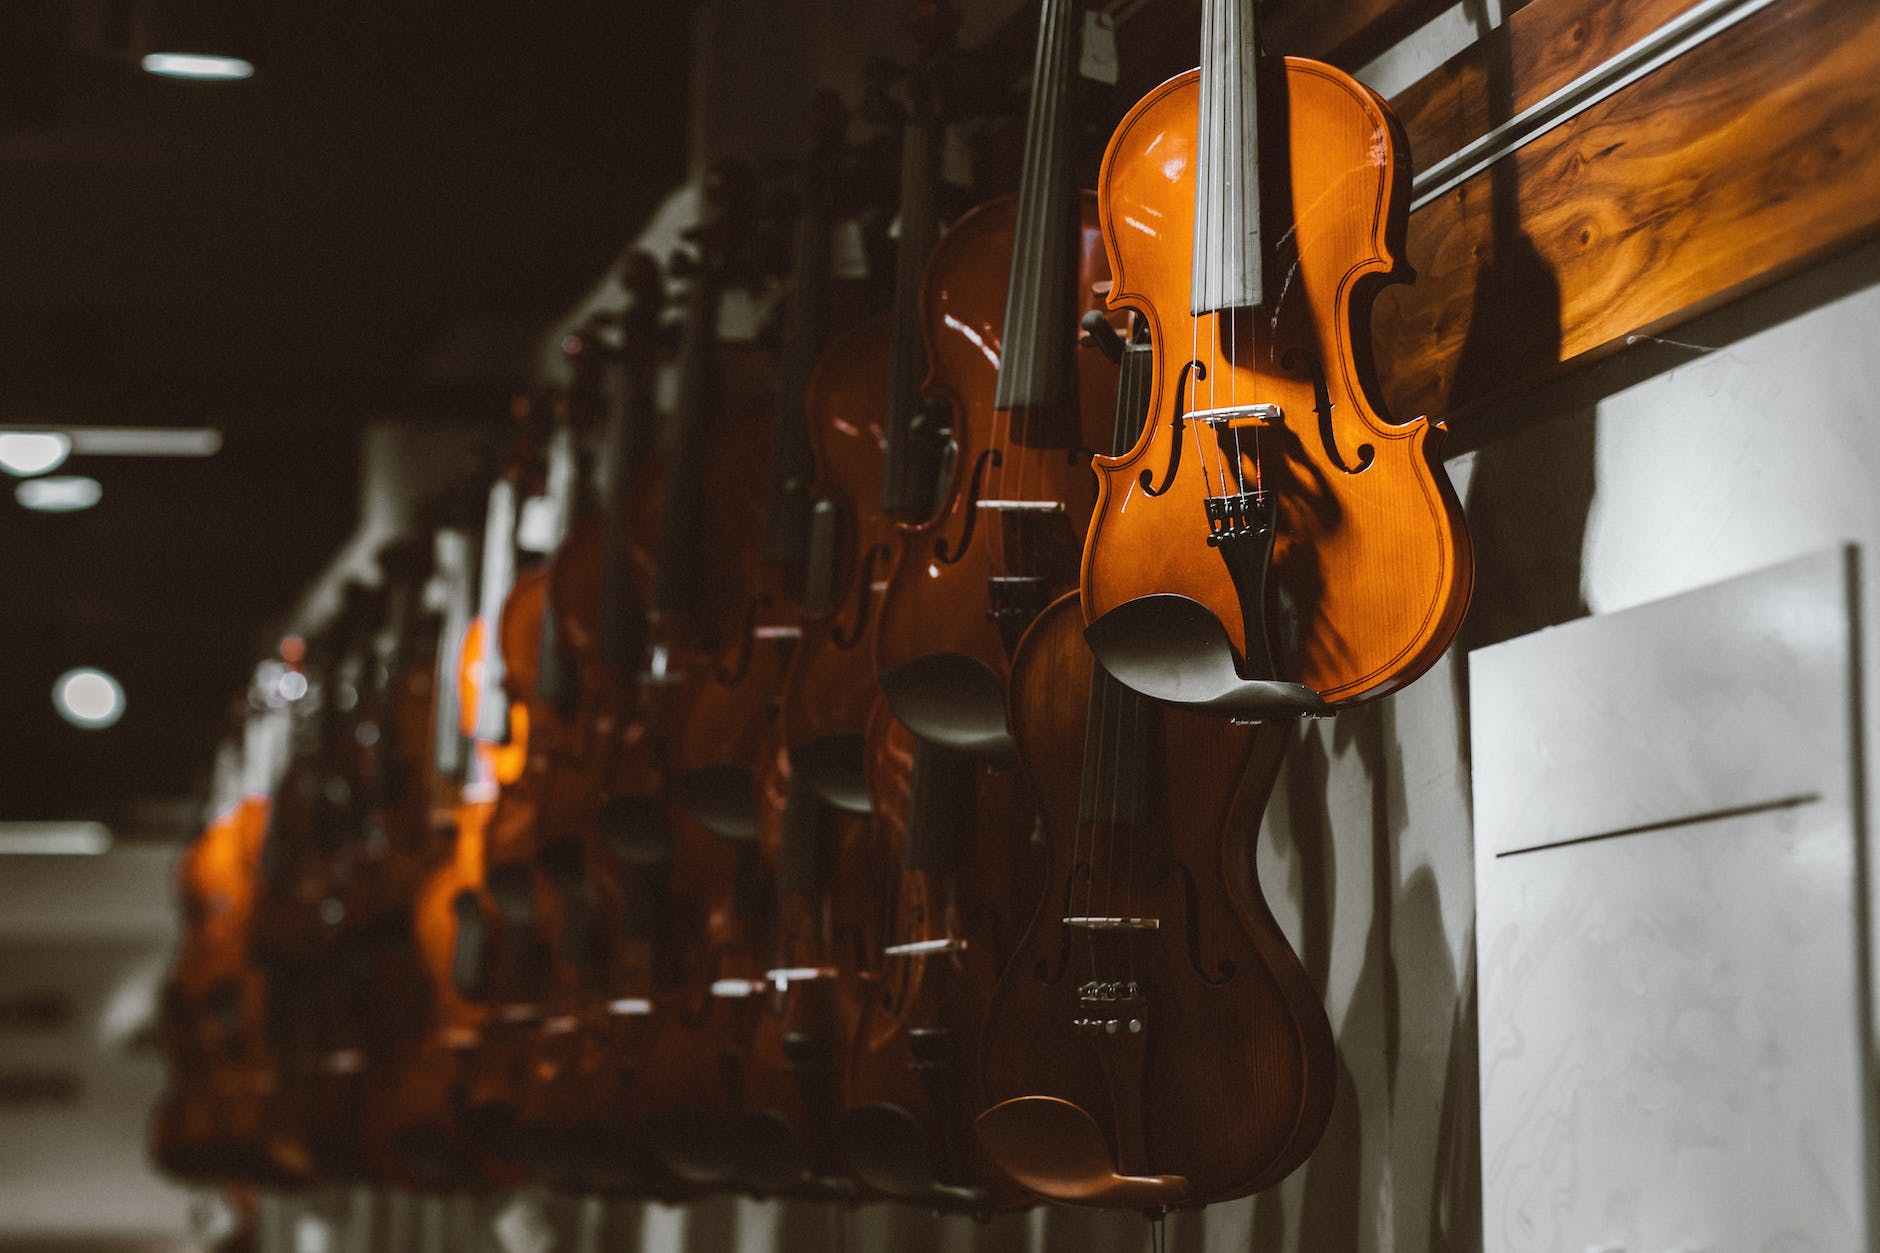 an array of fiddles handing on a wall